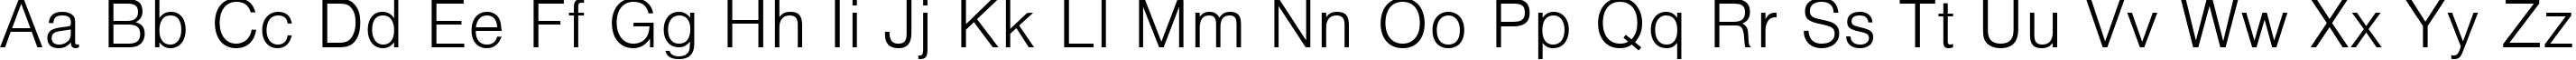 Пример написания английского алфавита шрифтом VantaLight